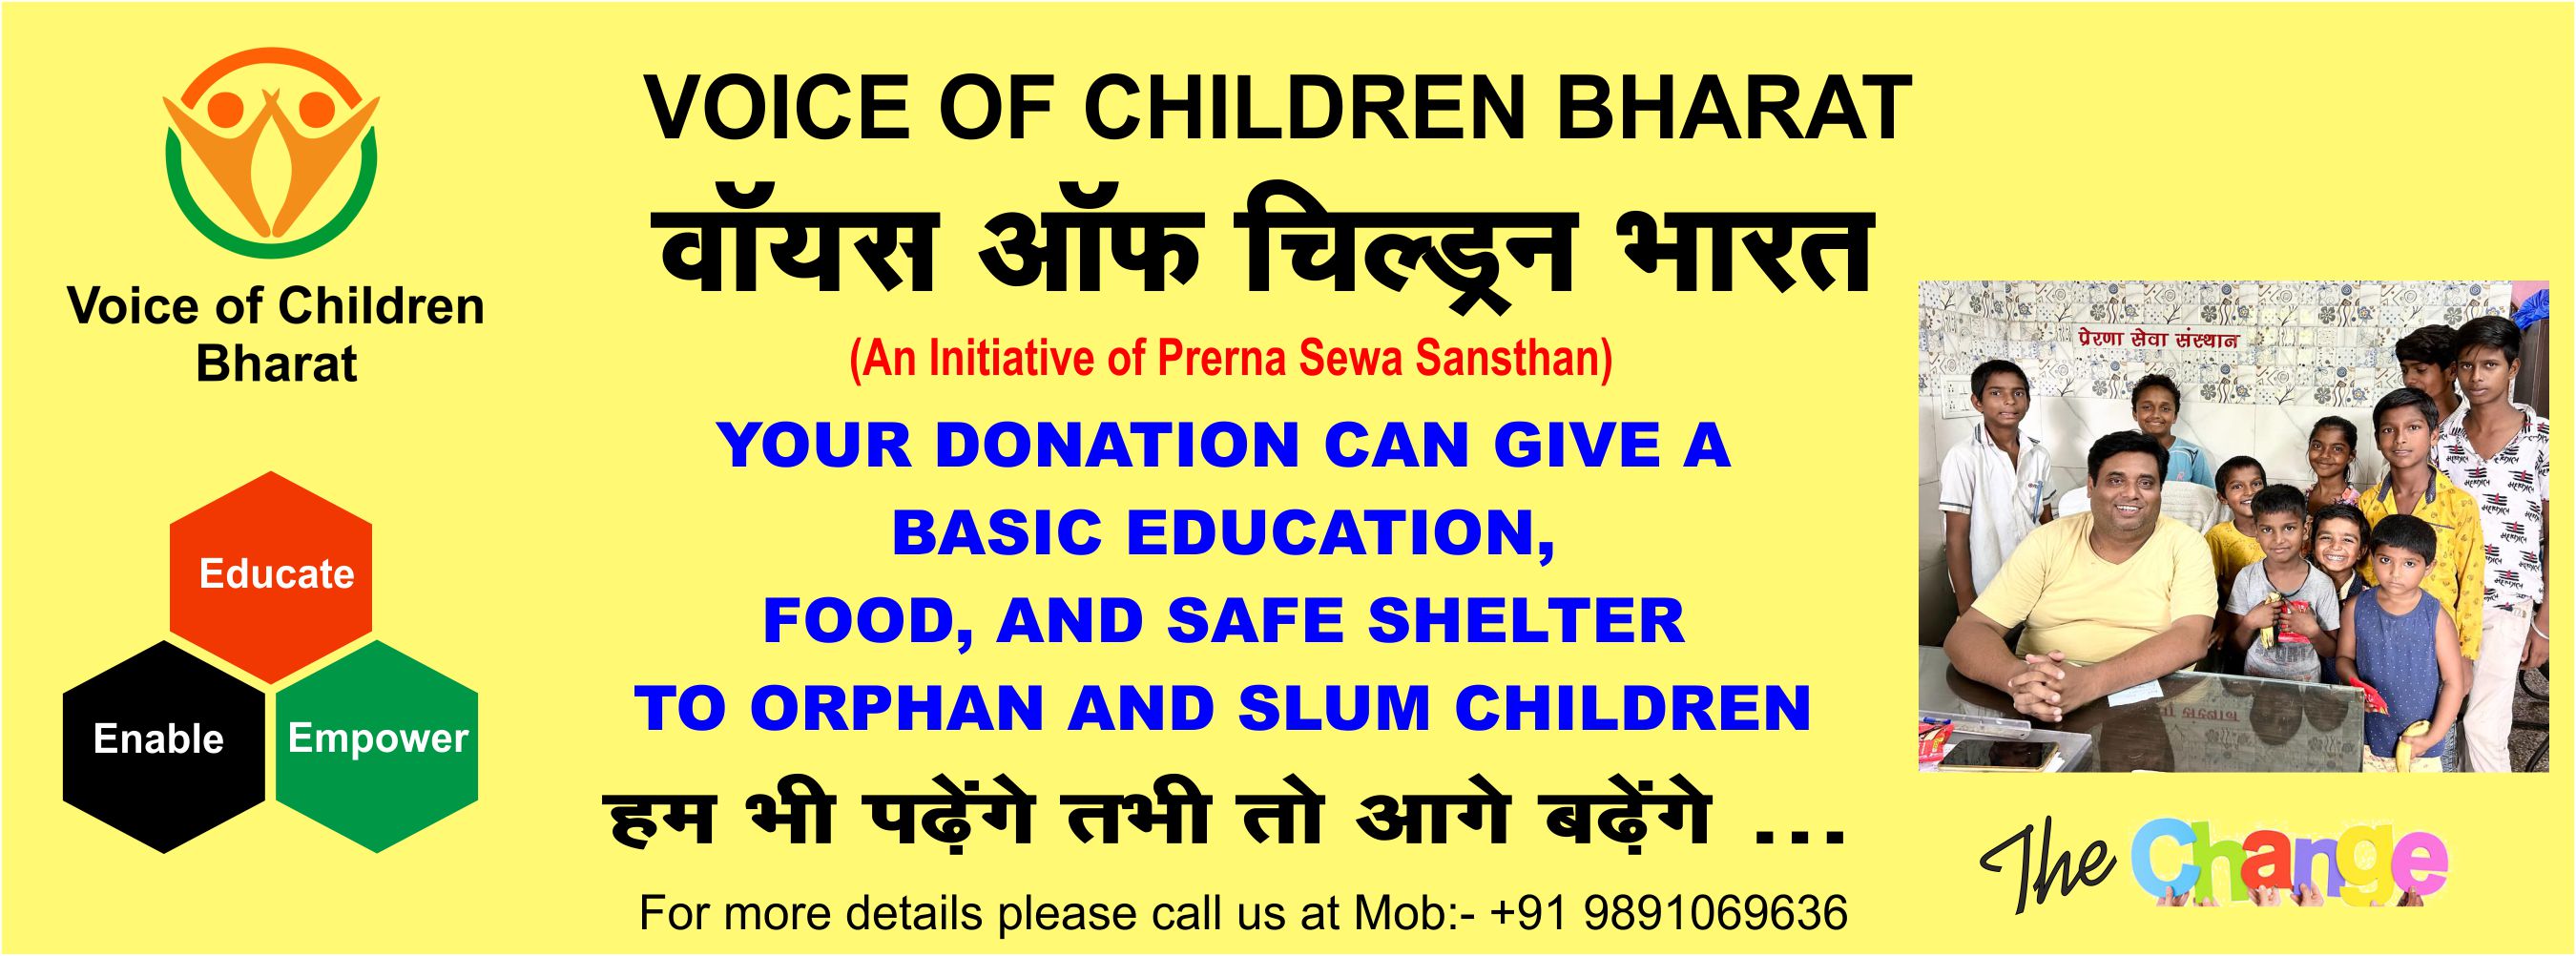 Voice of Children Bharat